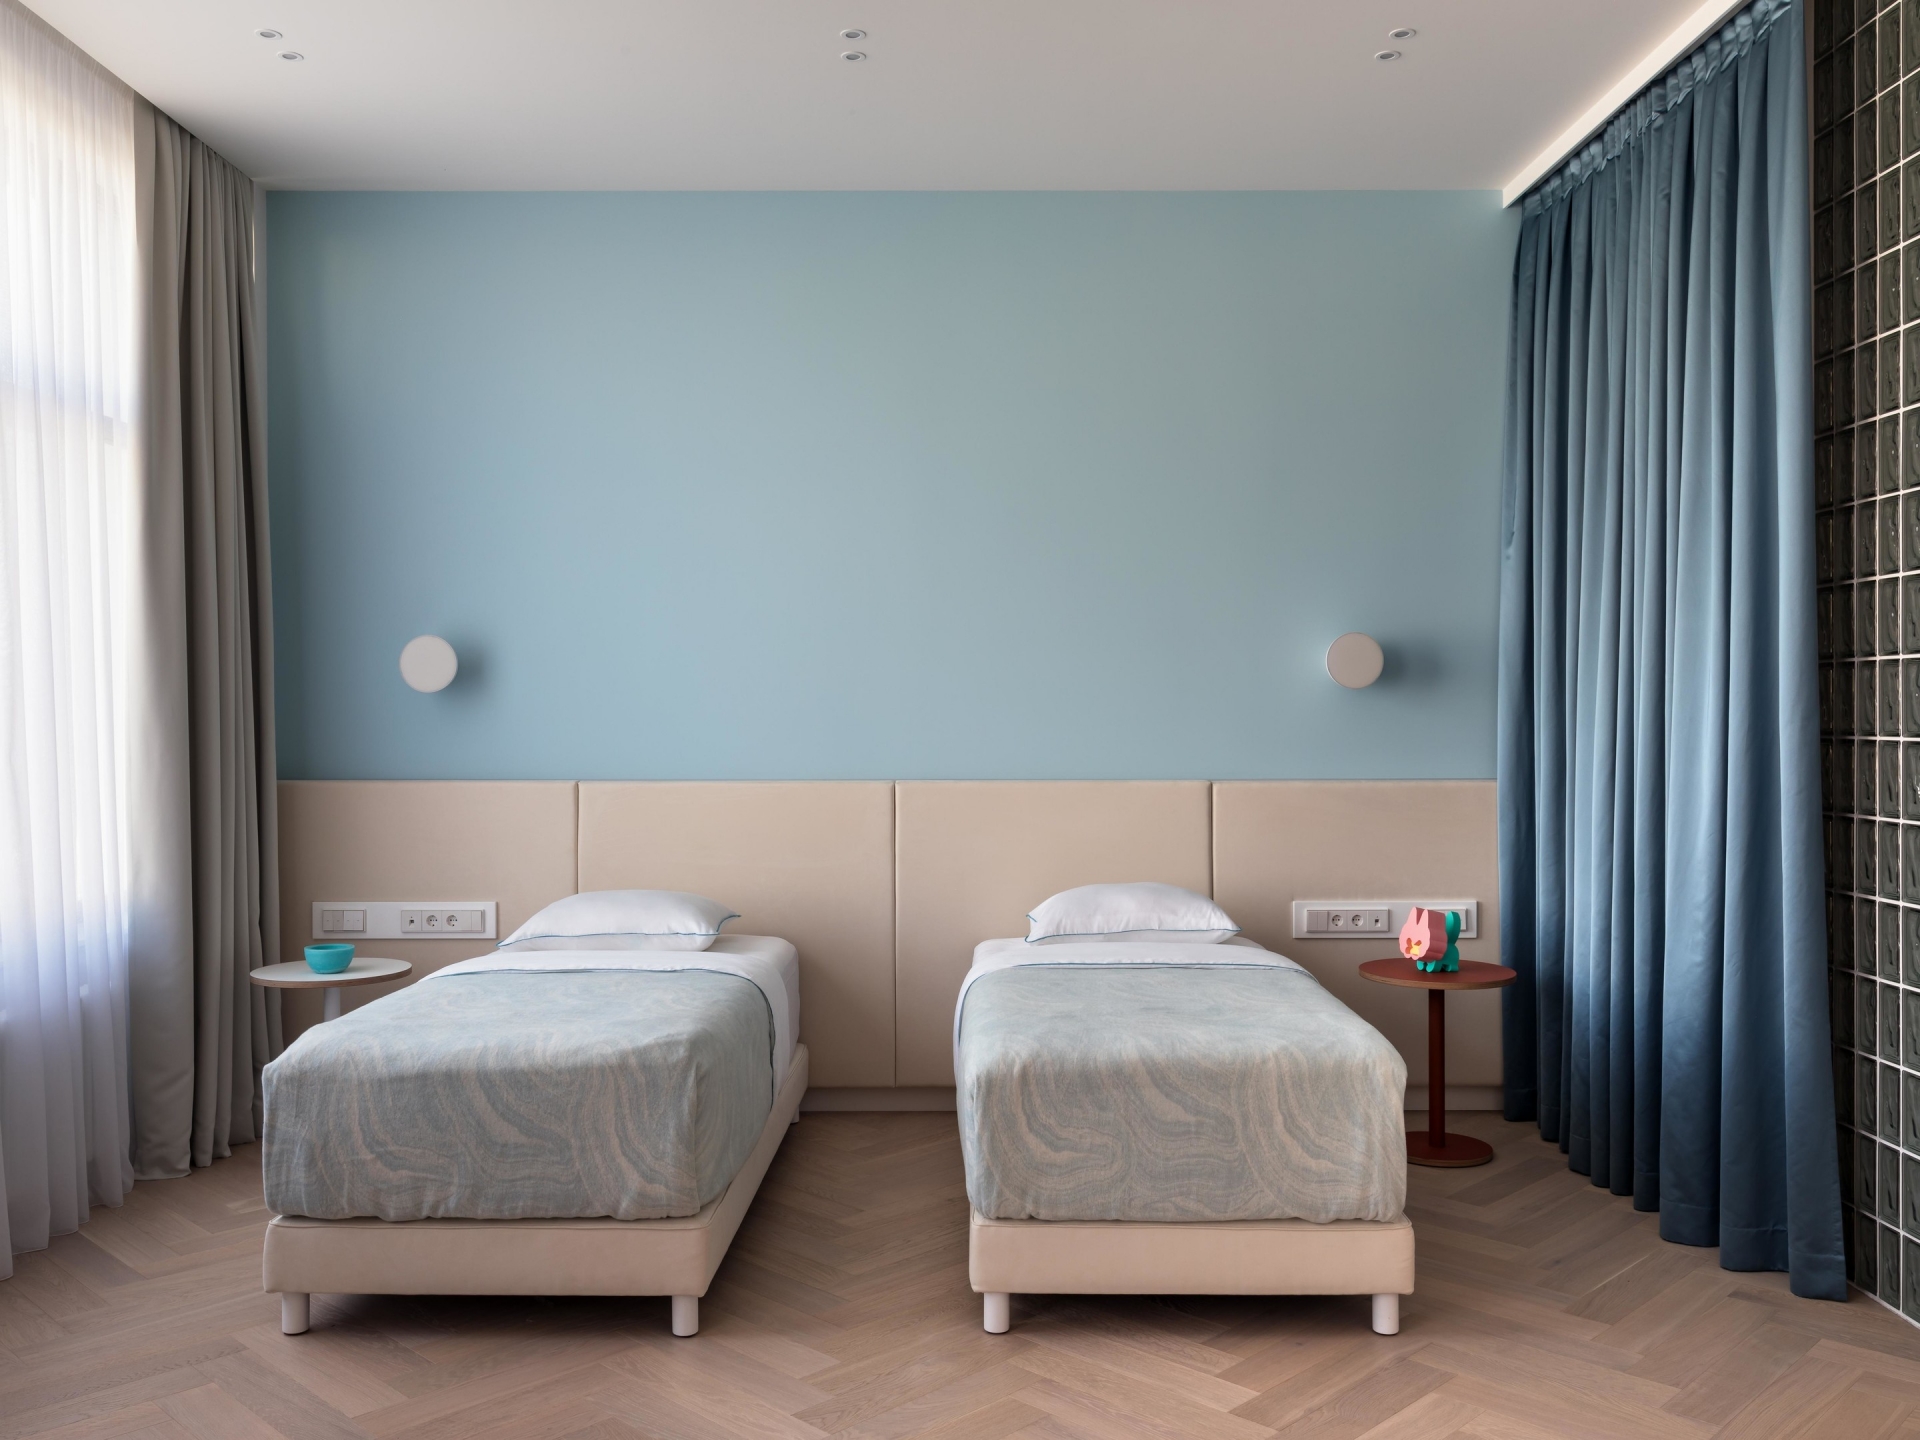 Phòng của hai bé trai đang tuổi tiểu học được thiết kế tối giản với 2 chiếc giường đơn bố trí song song, táp đầu giường và đèn gắn tường cũng nhỏ gọn. Tone màu chủ đạo là xanh lam nhẹ nhàng tươi mới.